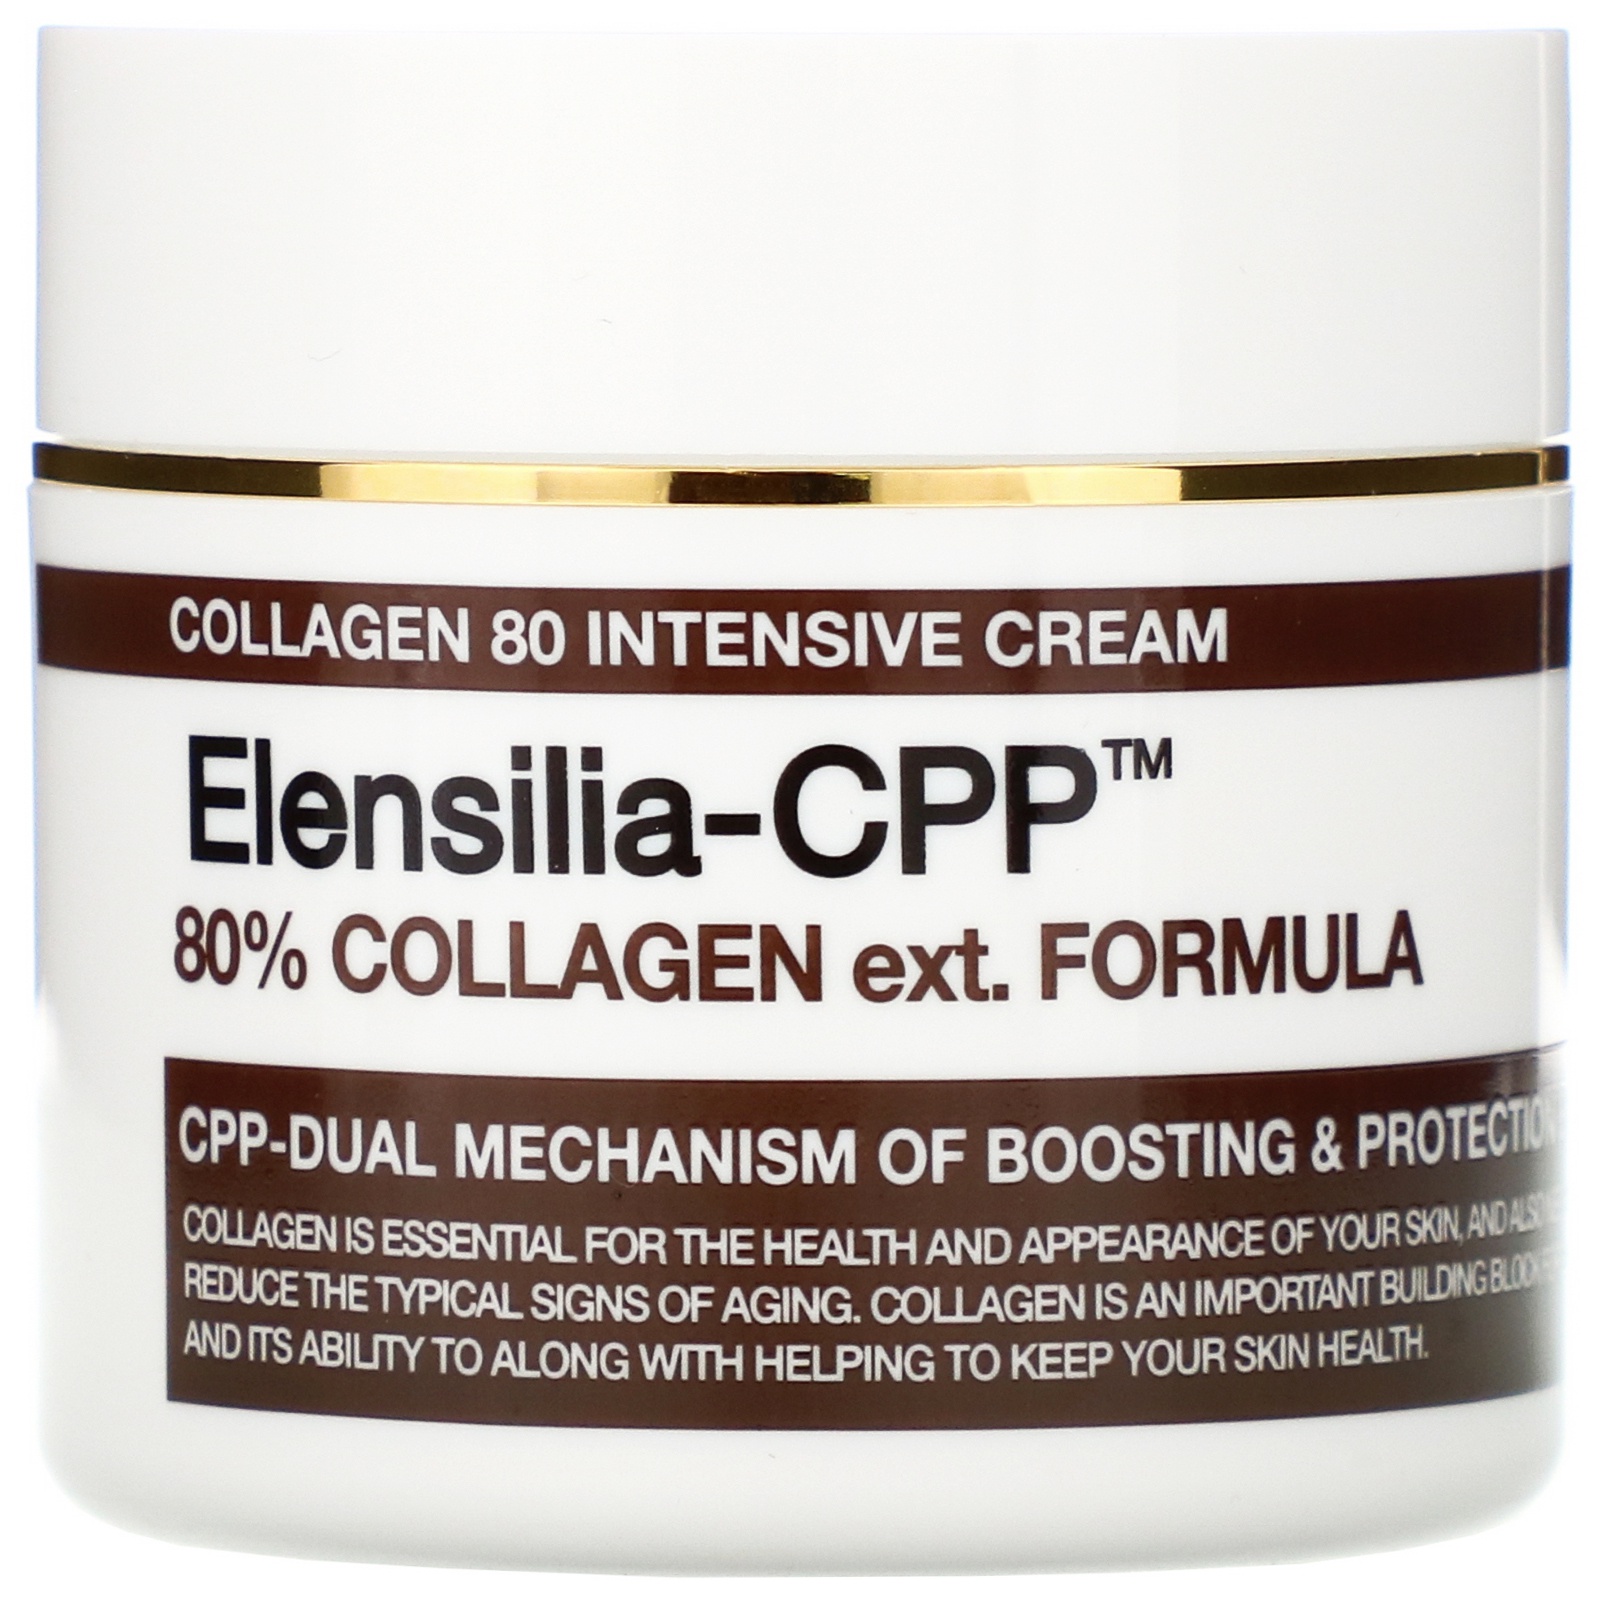 ELENSILIA CPP Collagen 80 Intensive Cream